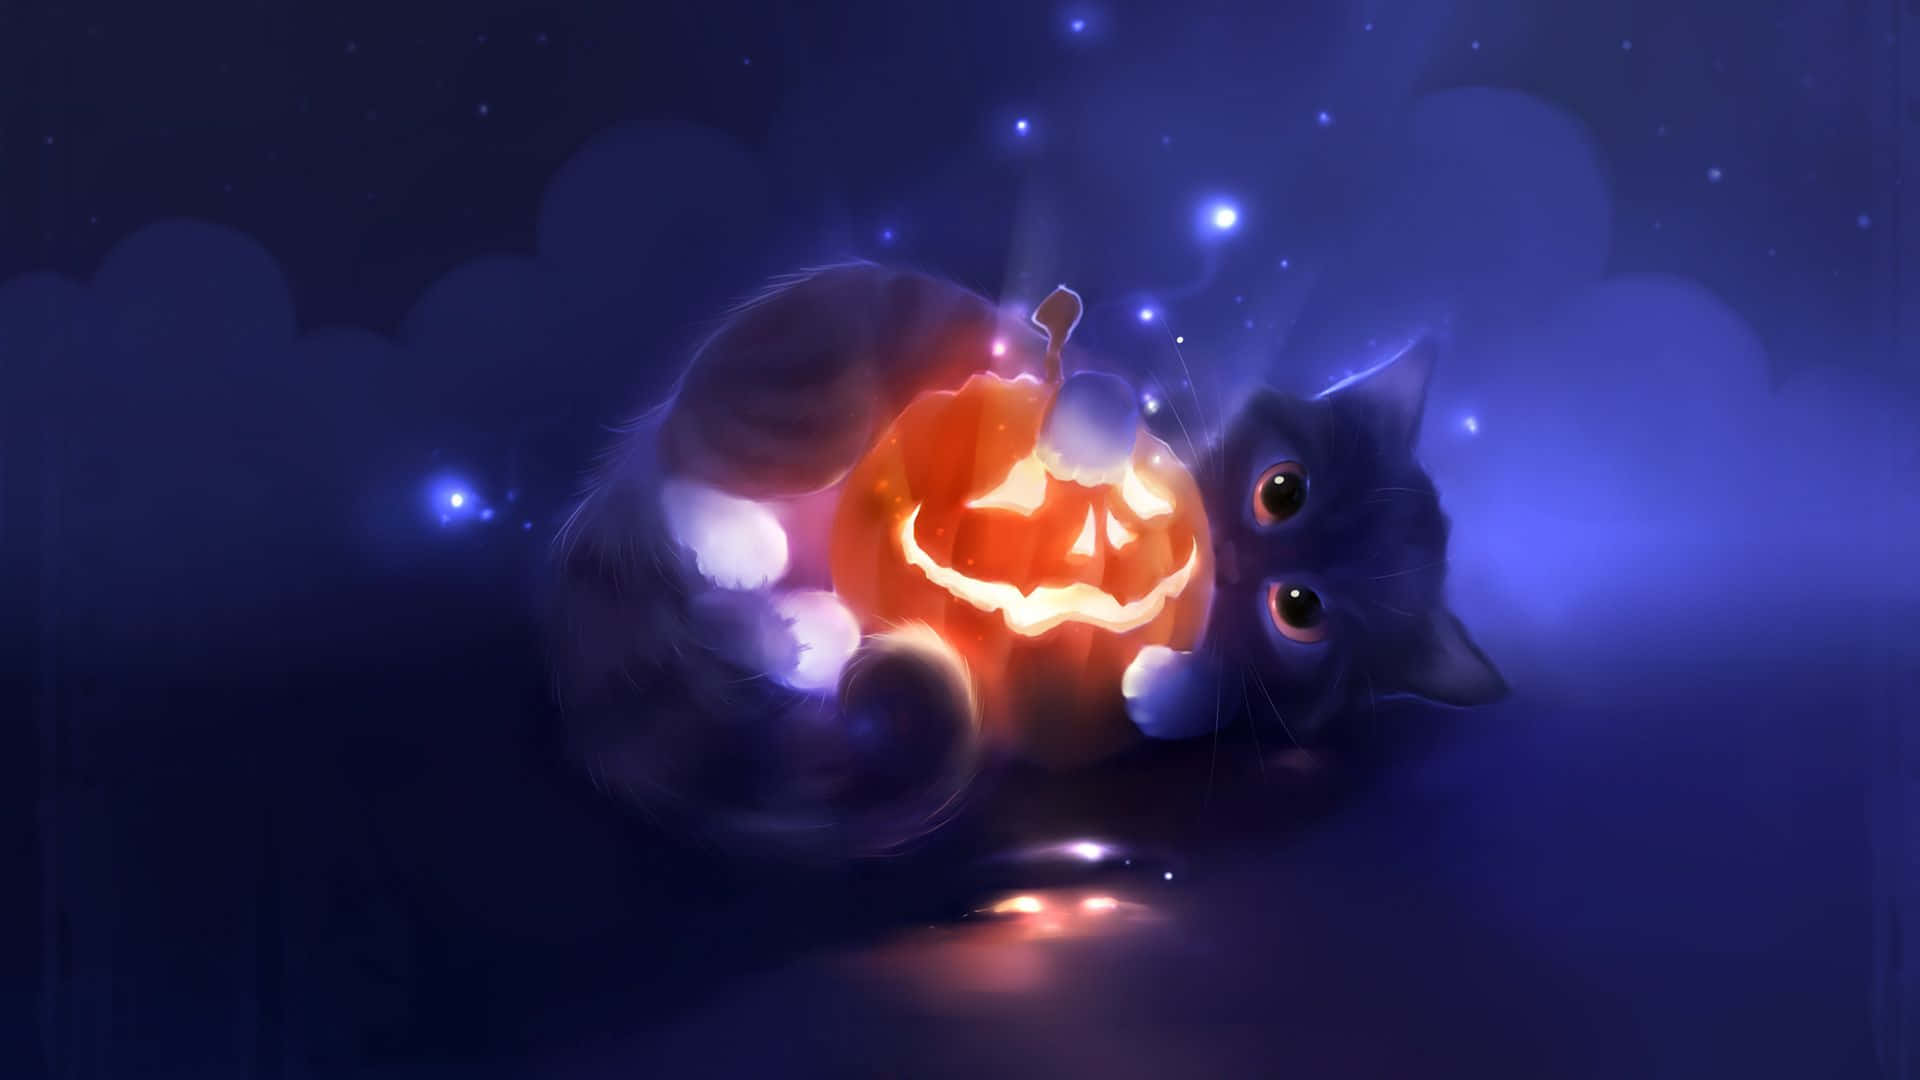 Halloween Cute Black Cat Snuggling Pumpkin Picture